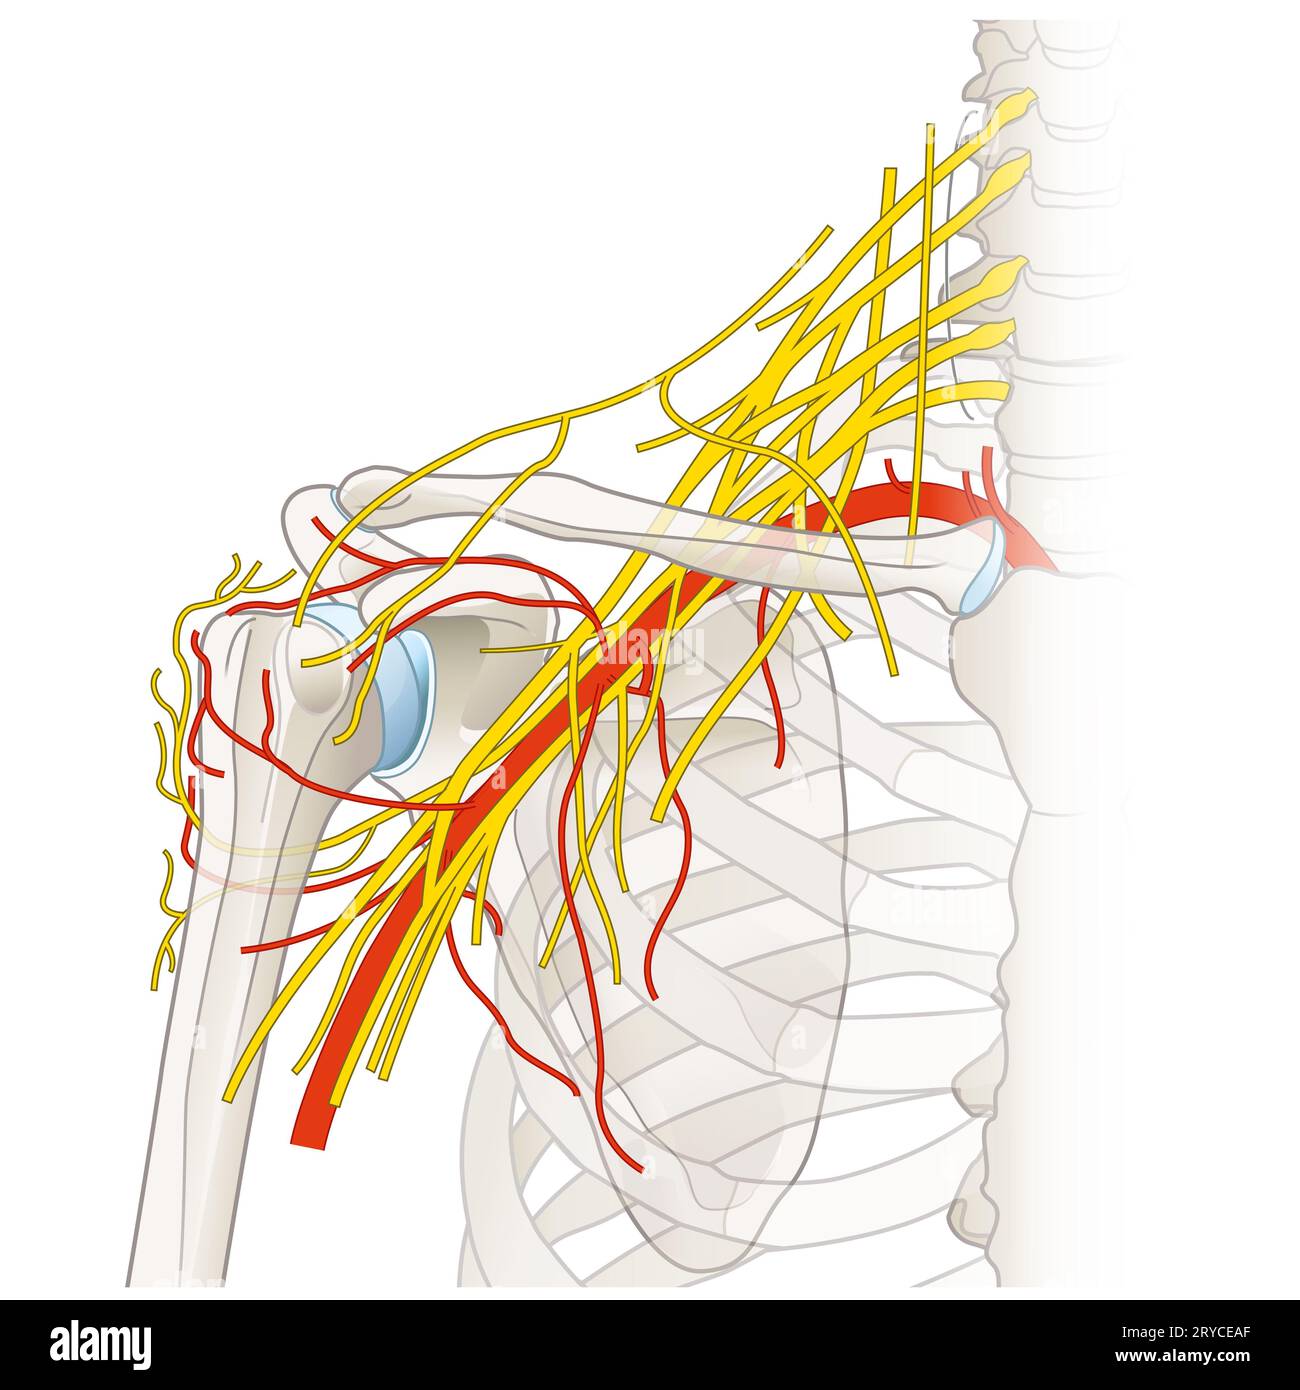 La région de l'épaule abrite un réseau complexe de nerfs et de vaisseaux, y compris le plexus brachial, les artères et les veines, essentiels à l'innervation des membres Banque D'Images